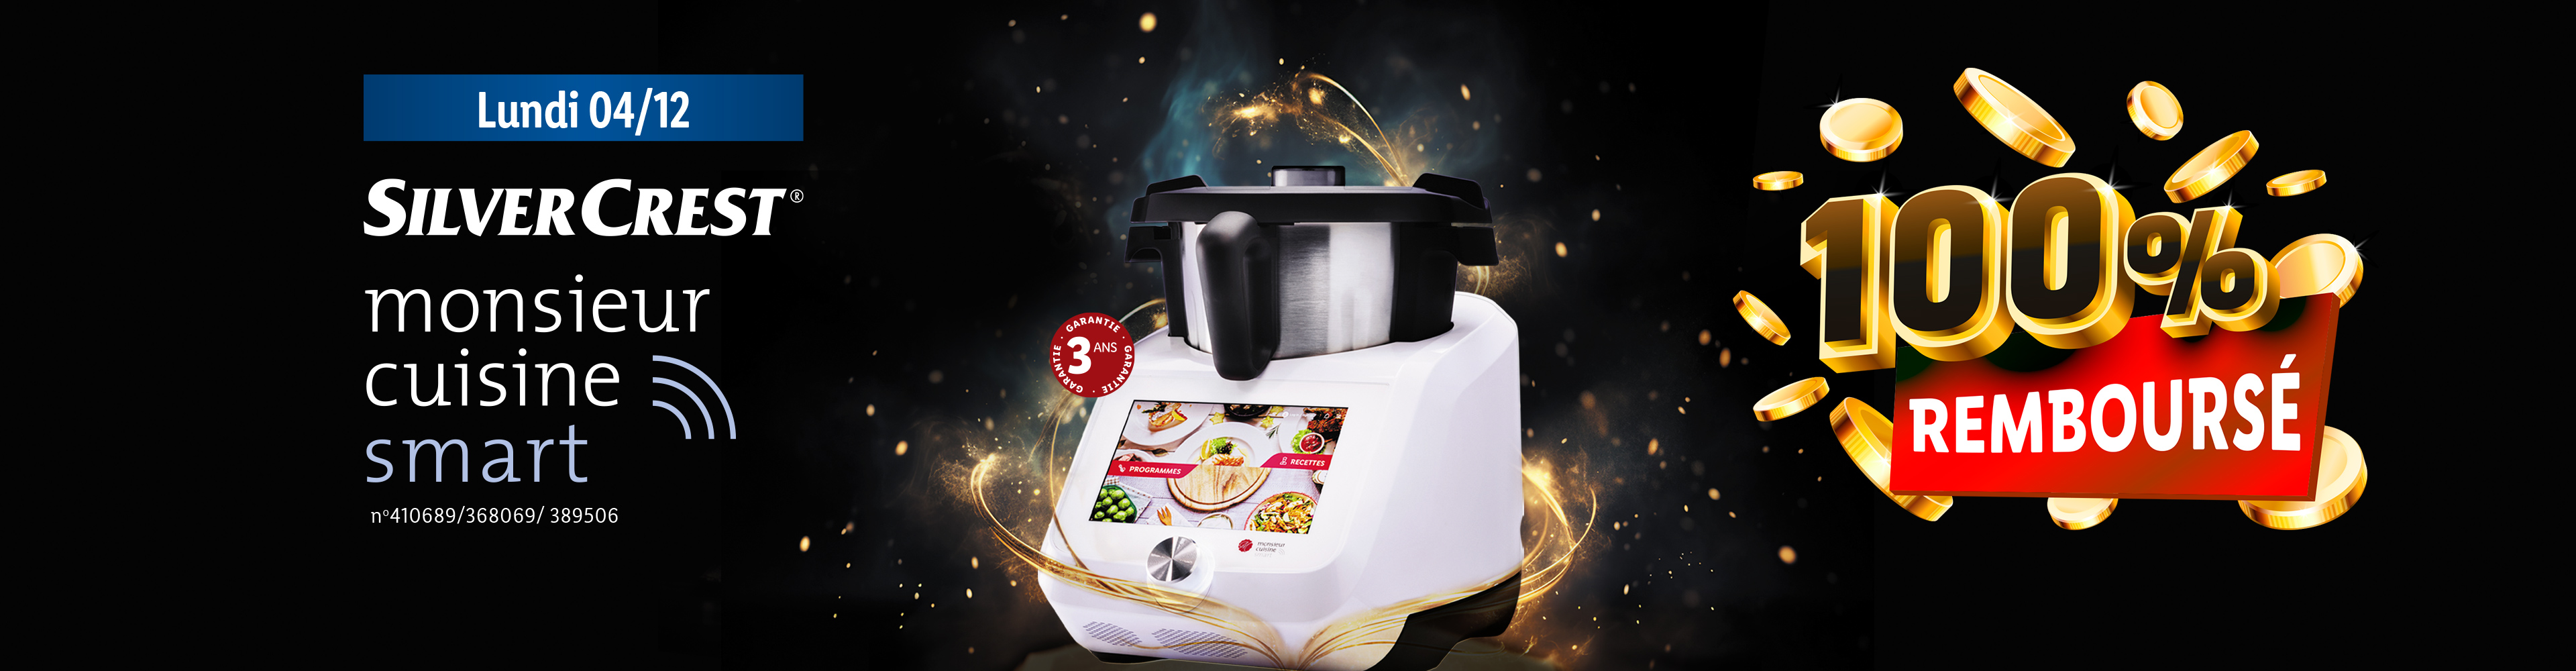 Lidl : Monsieur Cuisine Edition Plus, le robot multifonction le moins cher  de l'enseigne, de retour en magasins le 9 mars et… à prix cassé